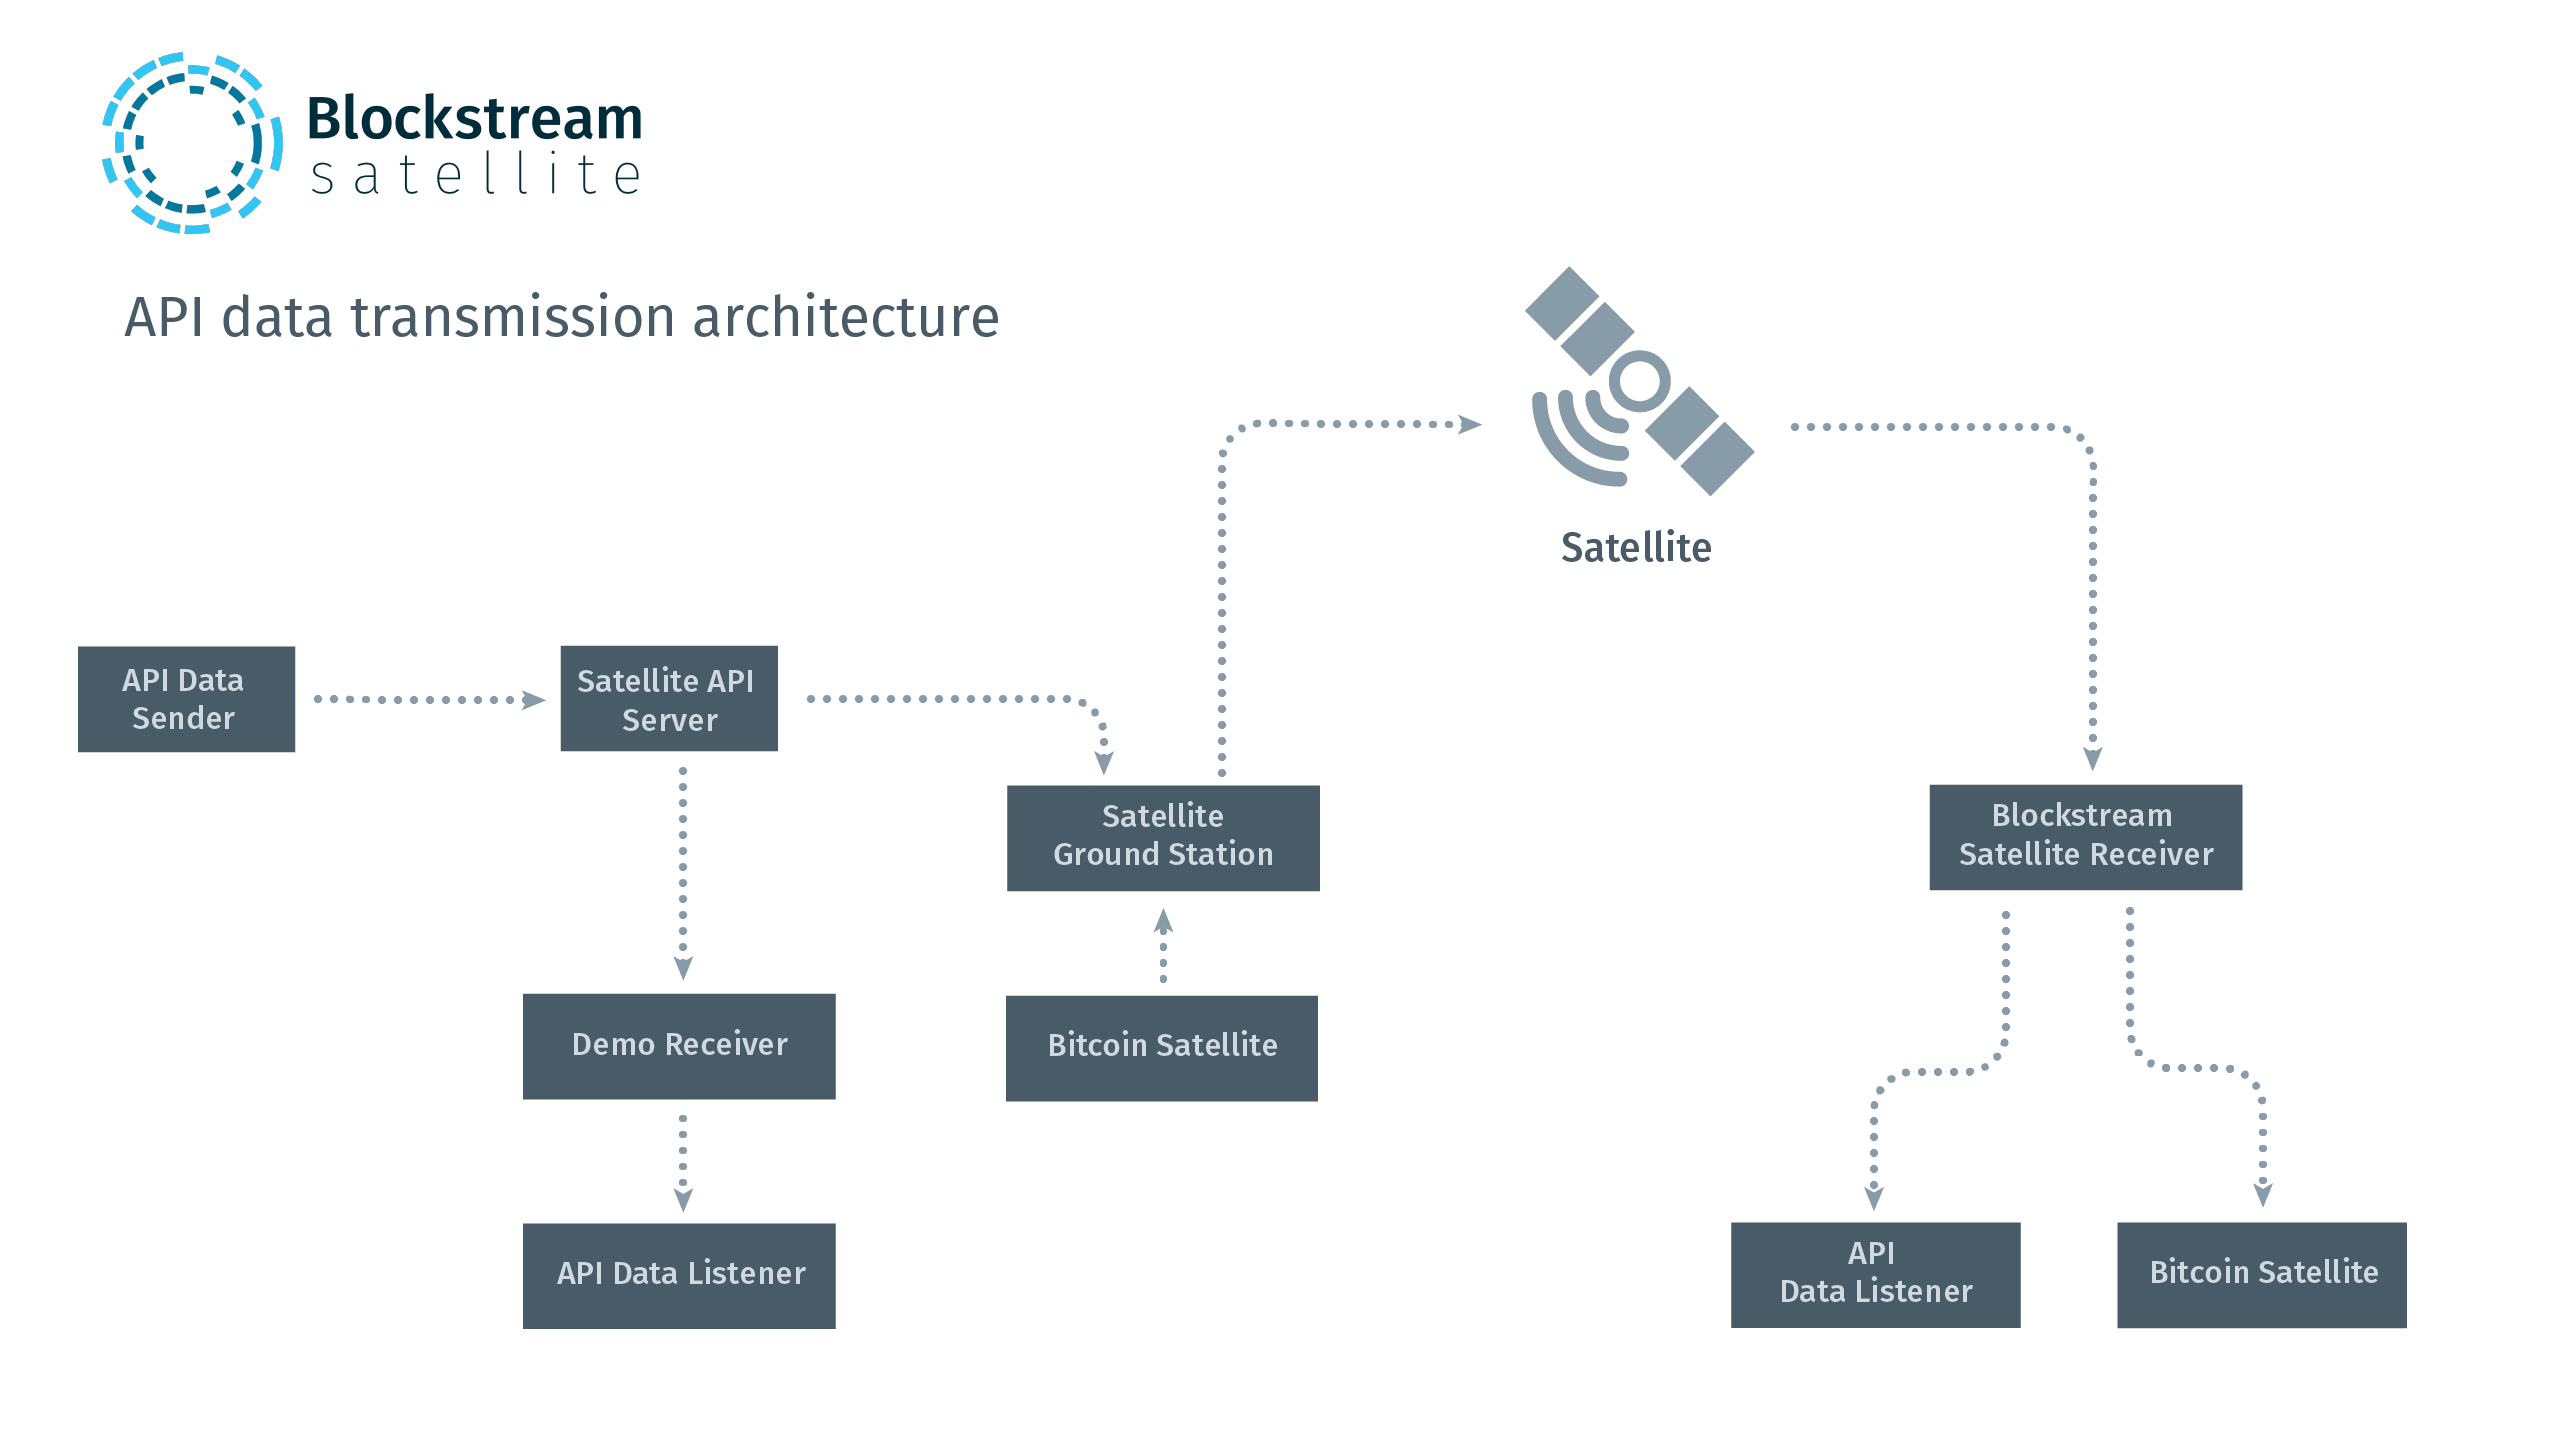 Blockstream Satellite API architecture